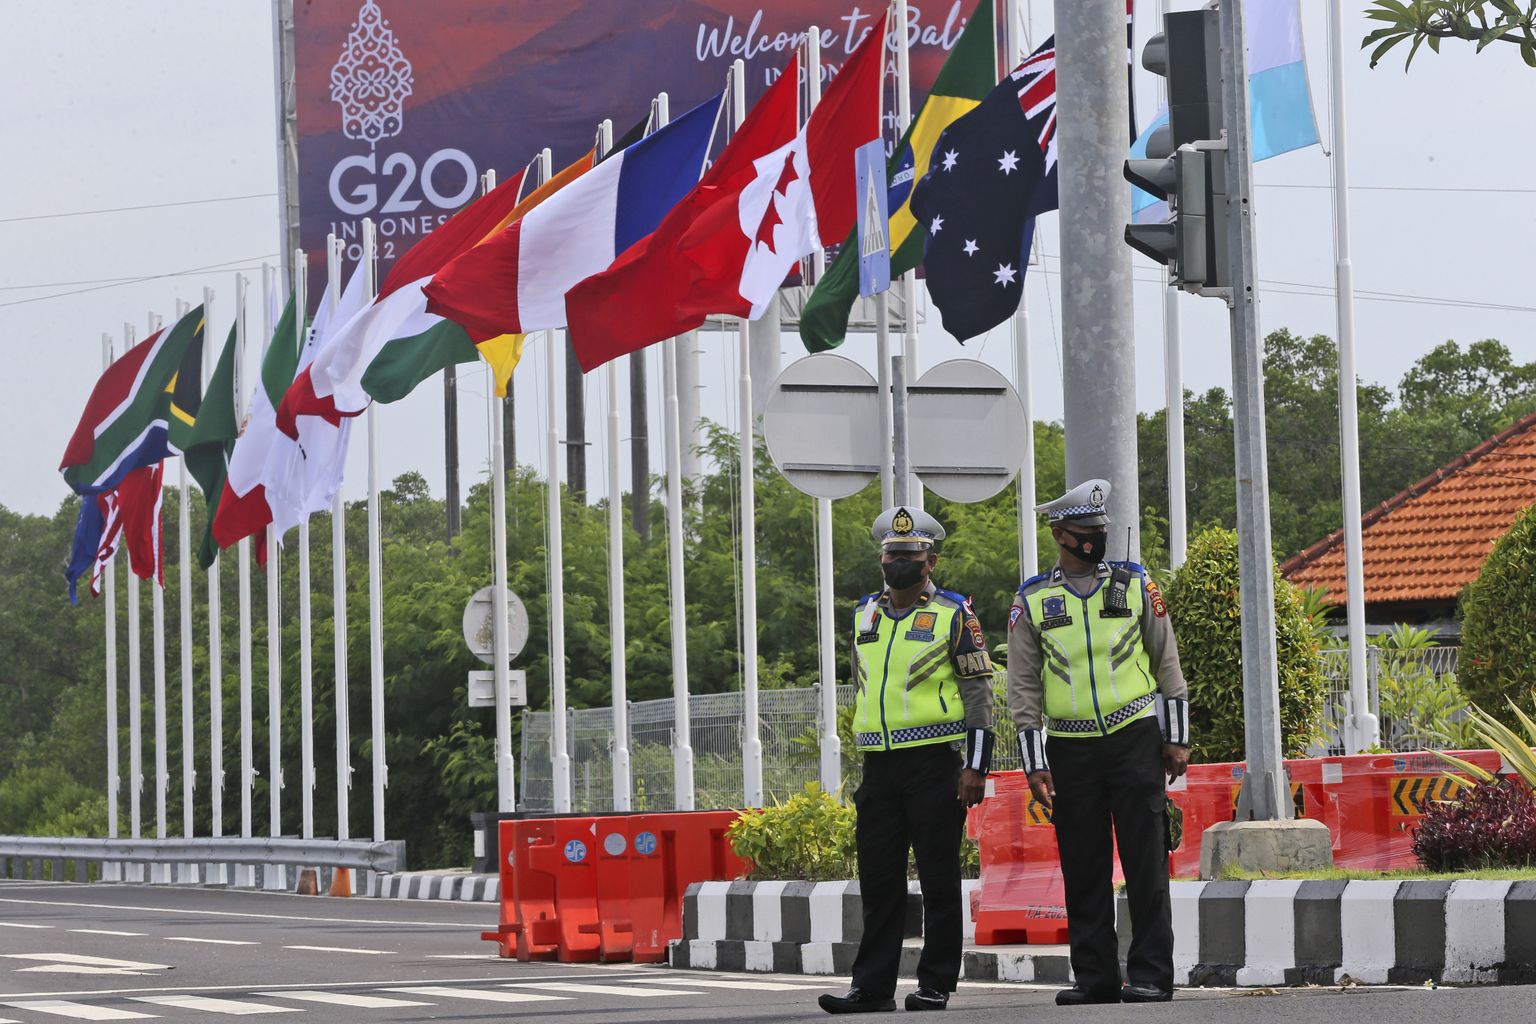 G20 riikide lipud ühenduse tippkohtumise paigas Indoneesia Bali saarel. Foto on illustratiivne.